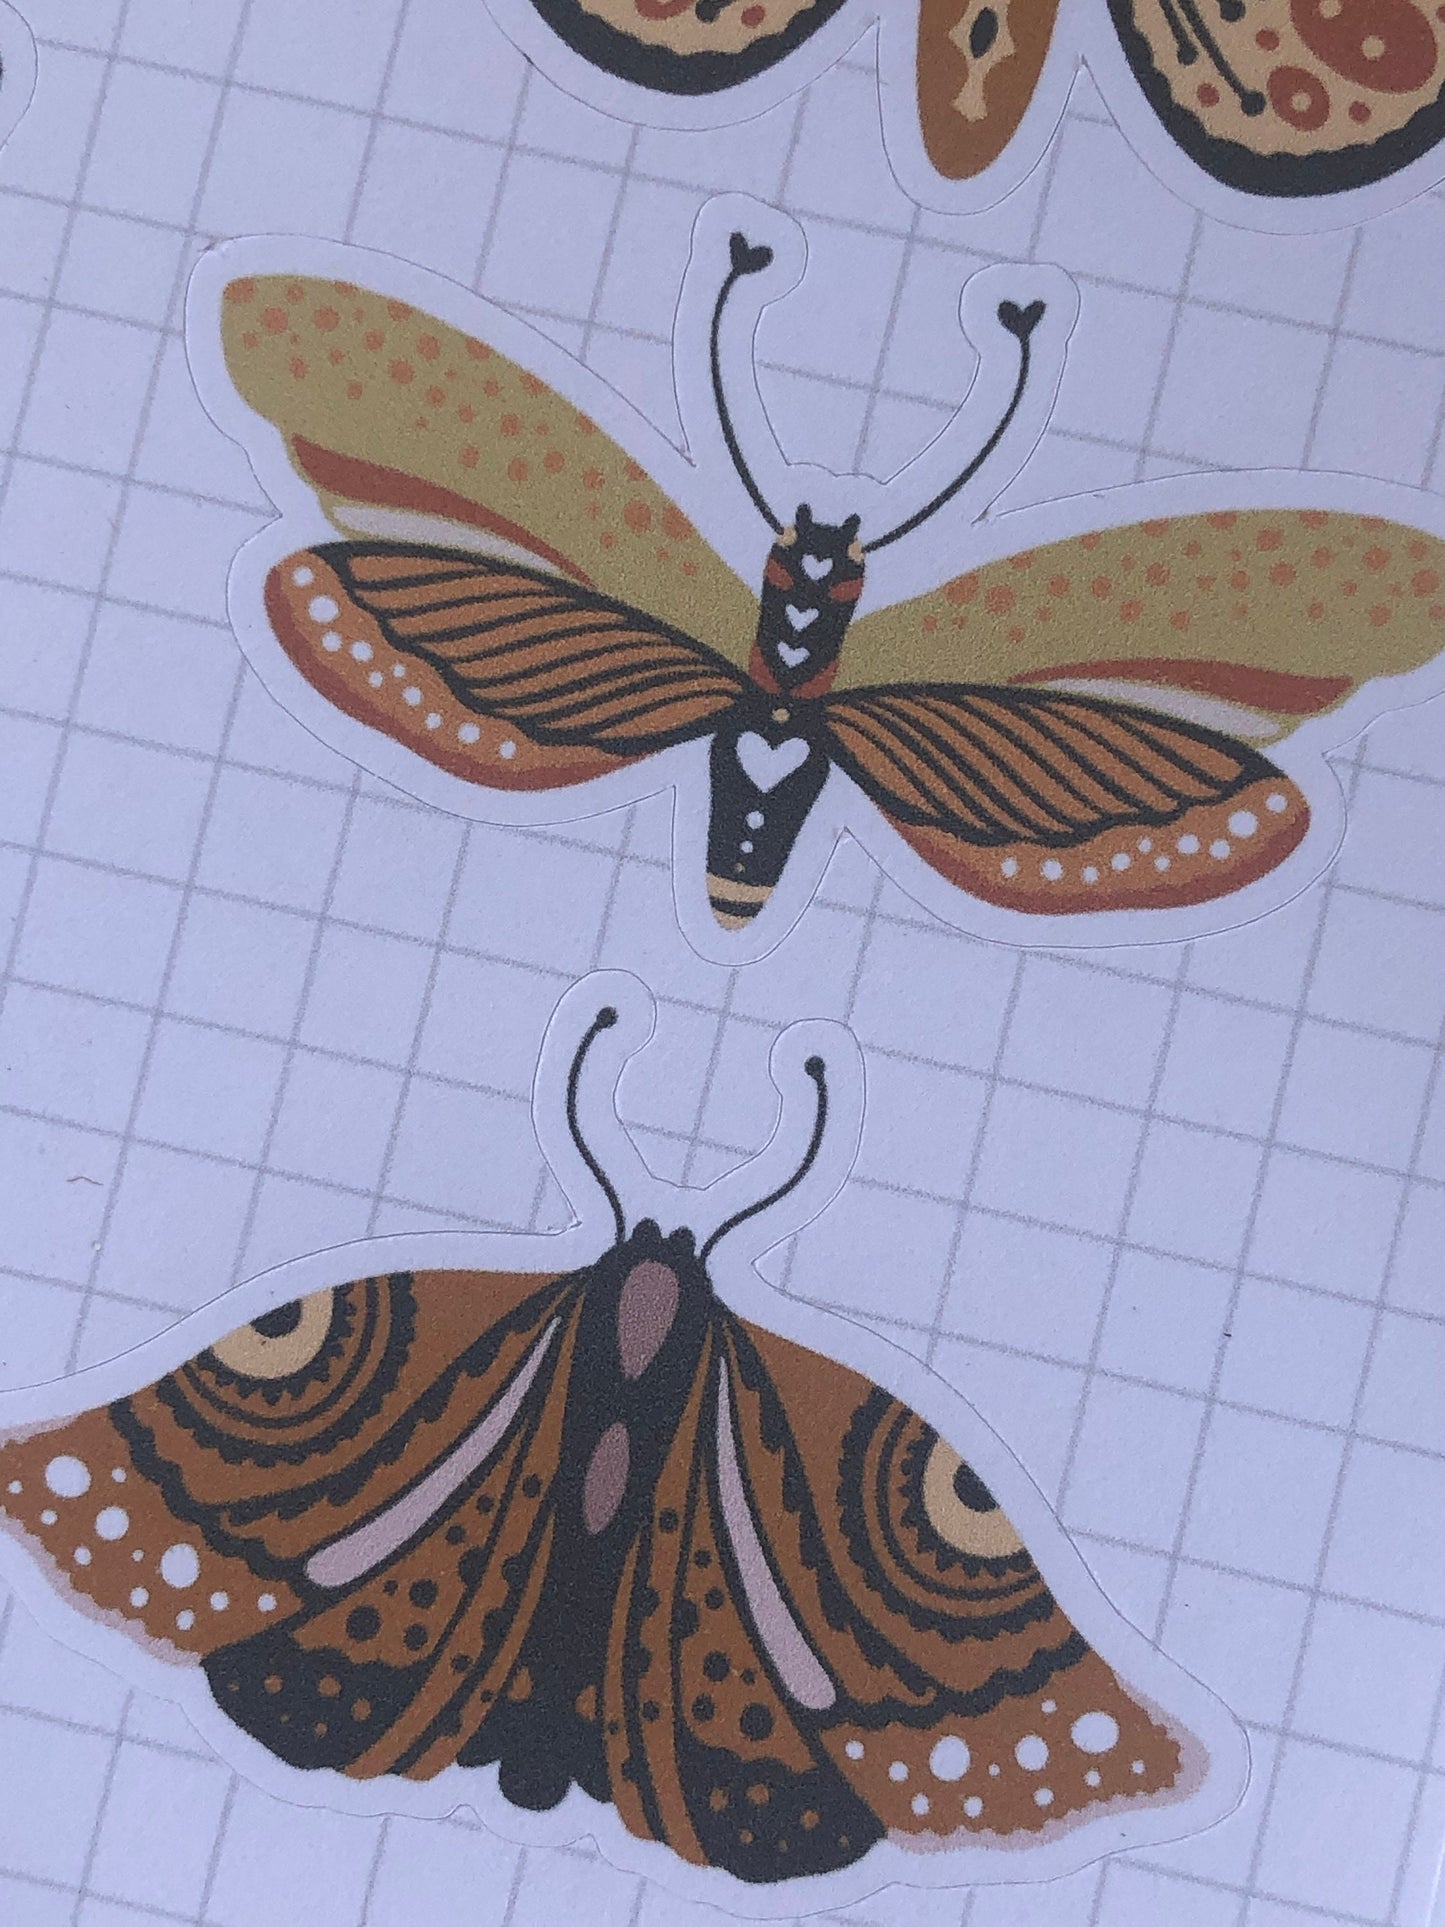 "Boho Butterfly" Sticker Sheet